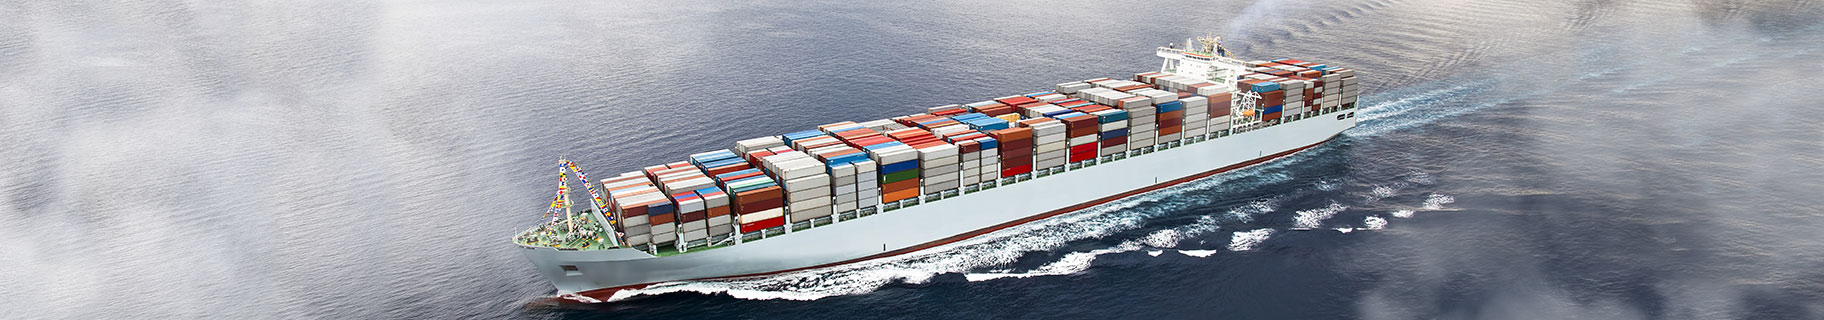 Image of a cargo ship